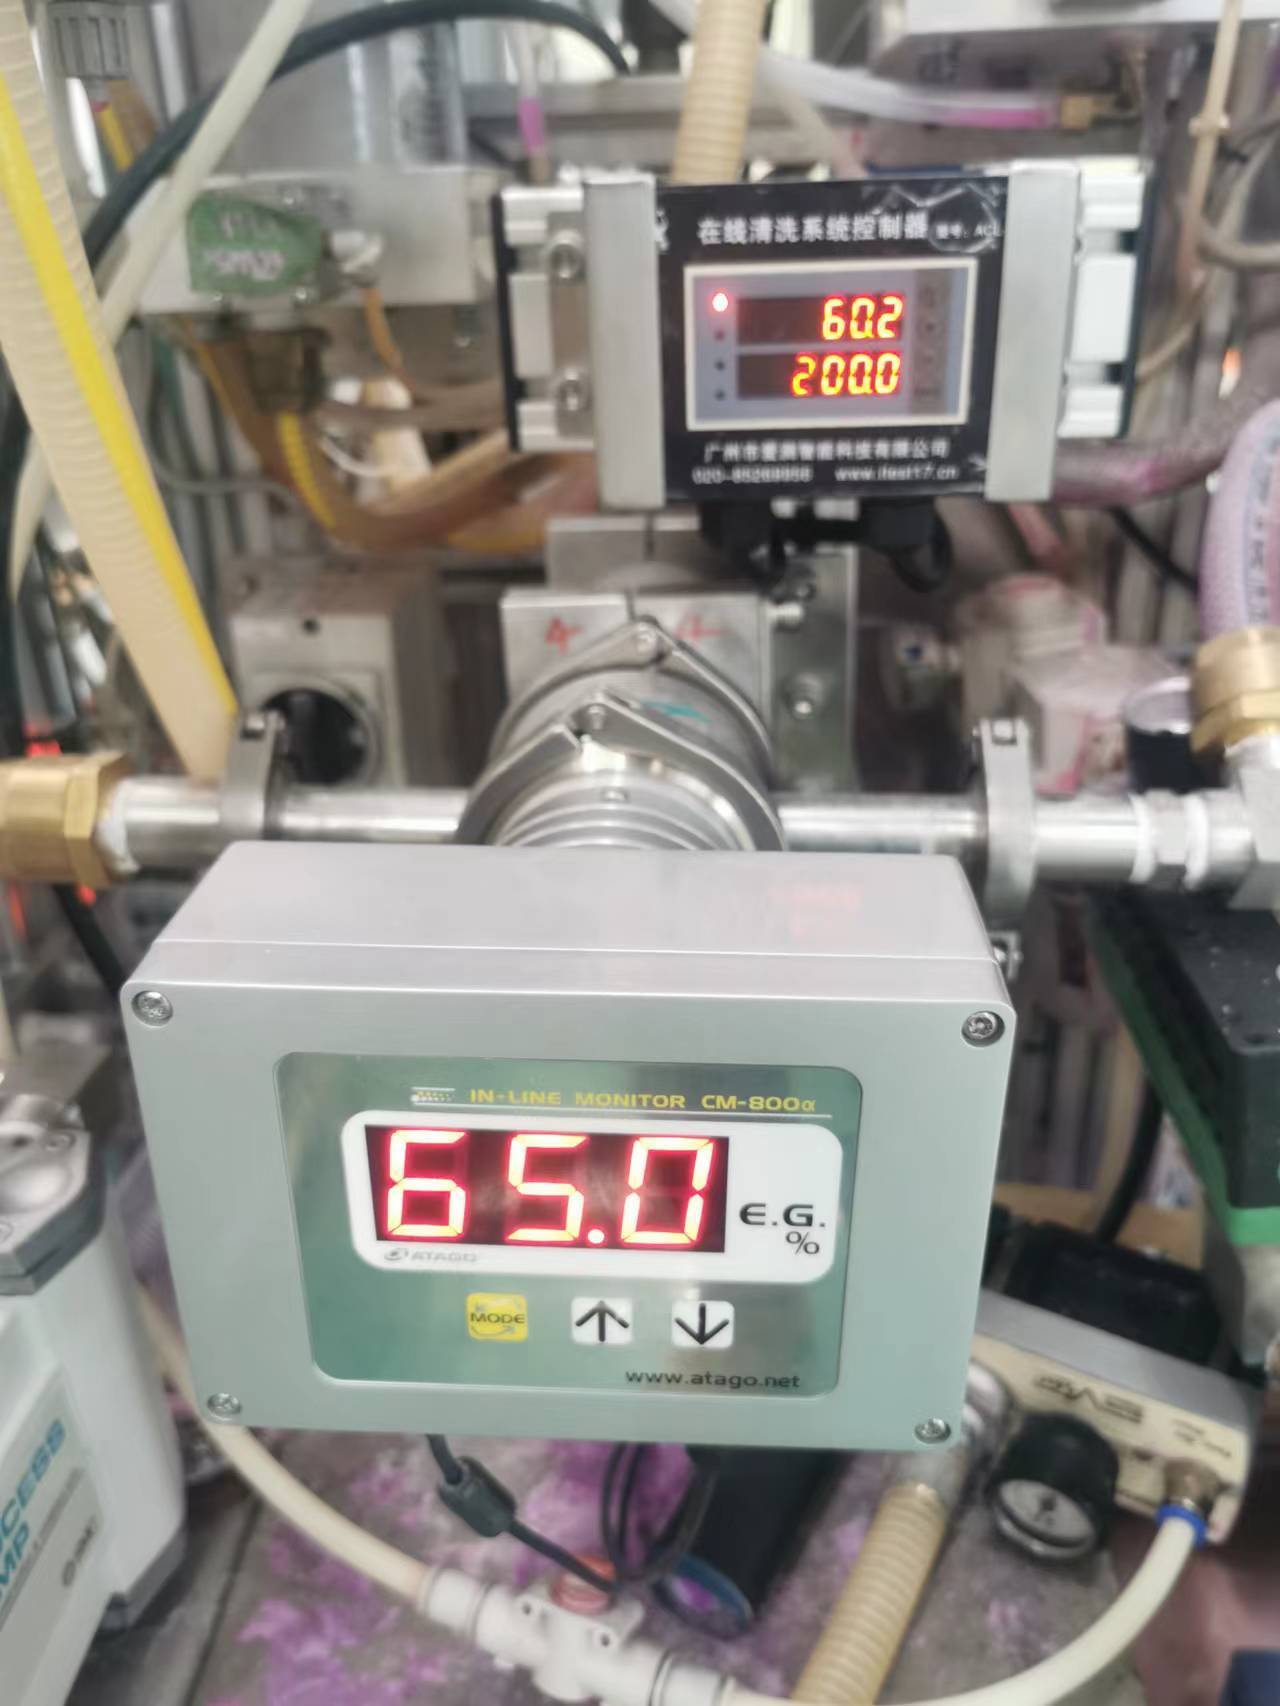  日本ATAGO乙二醇在线浓度计CM-800a EG 浓度传感器